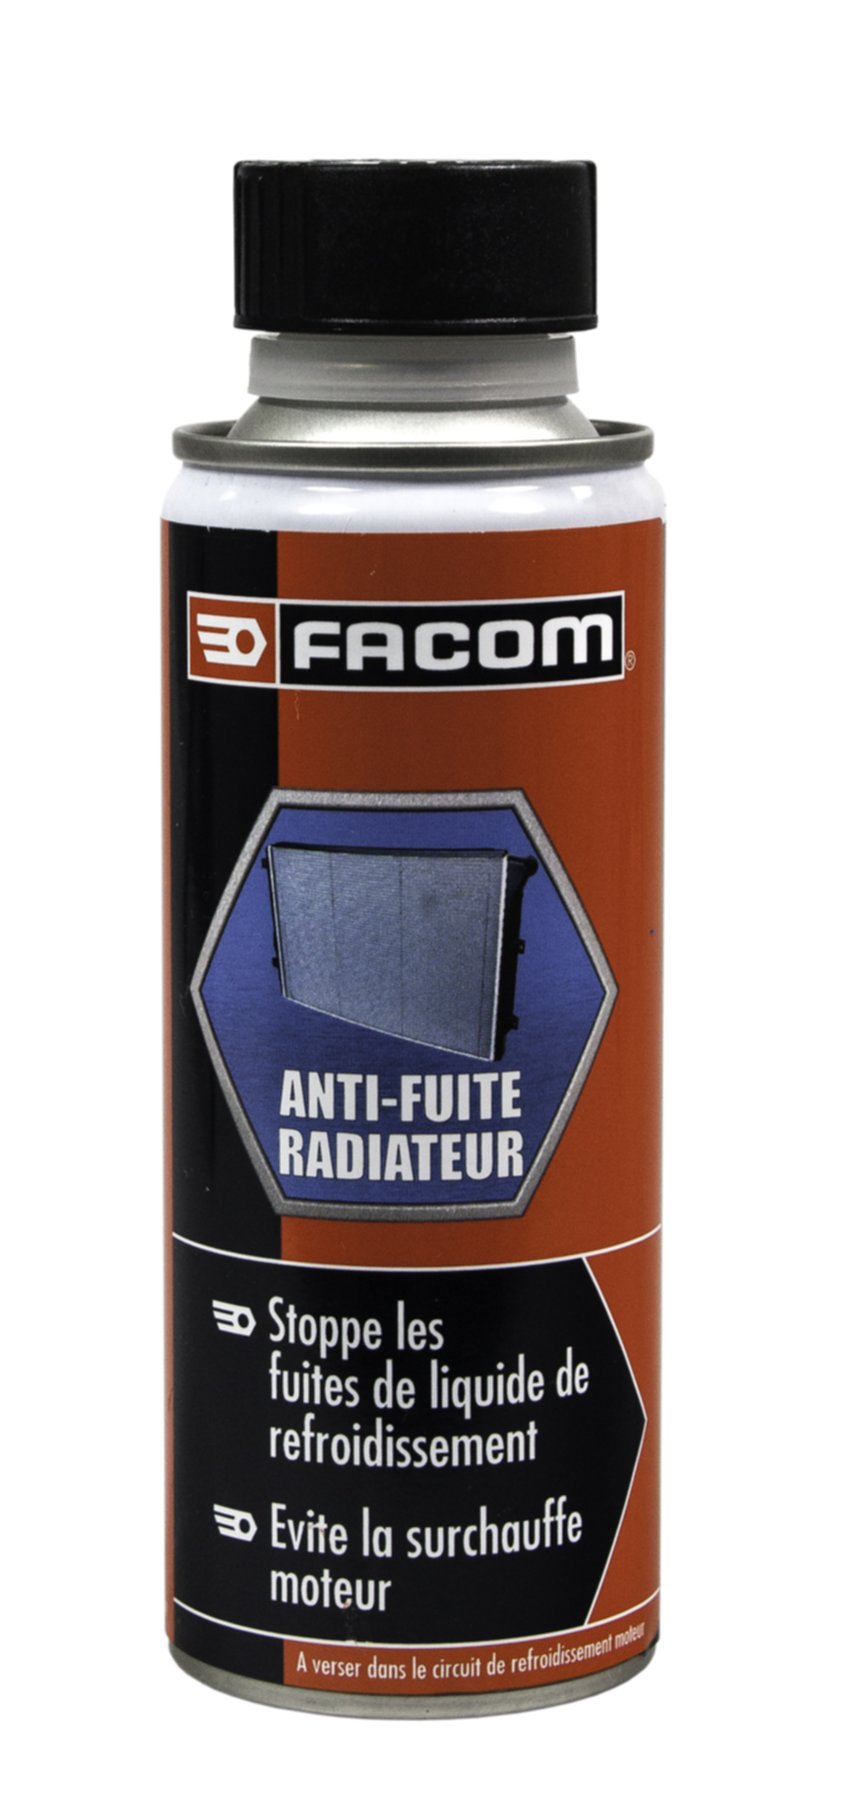 Anti-fuites radiateur 250 mL - FACOM